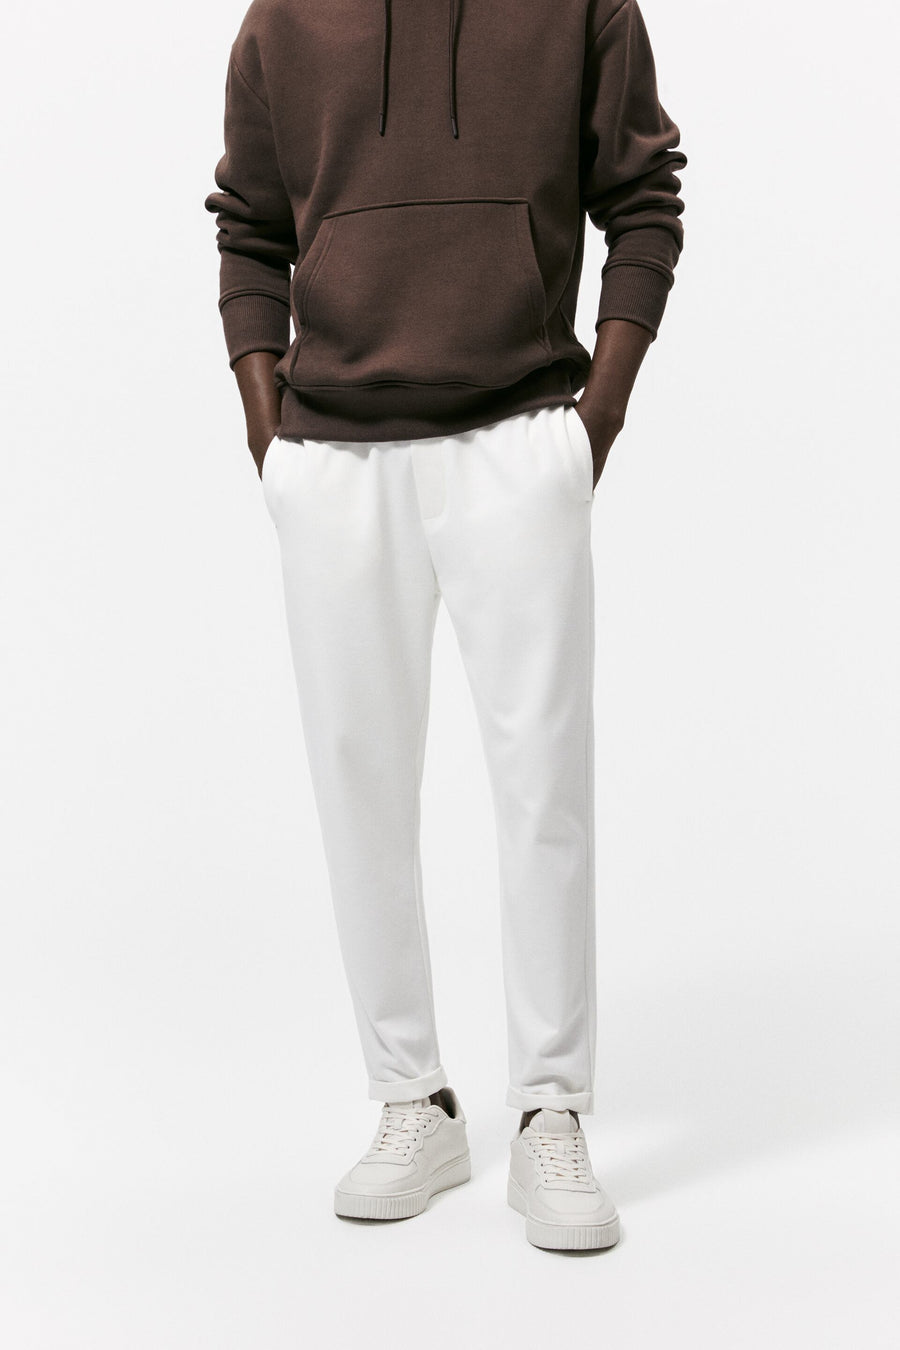 ZaraMan Knitted Jogg Cotton Trouser 0706/140/251